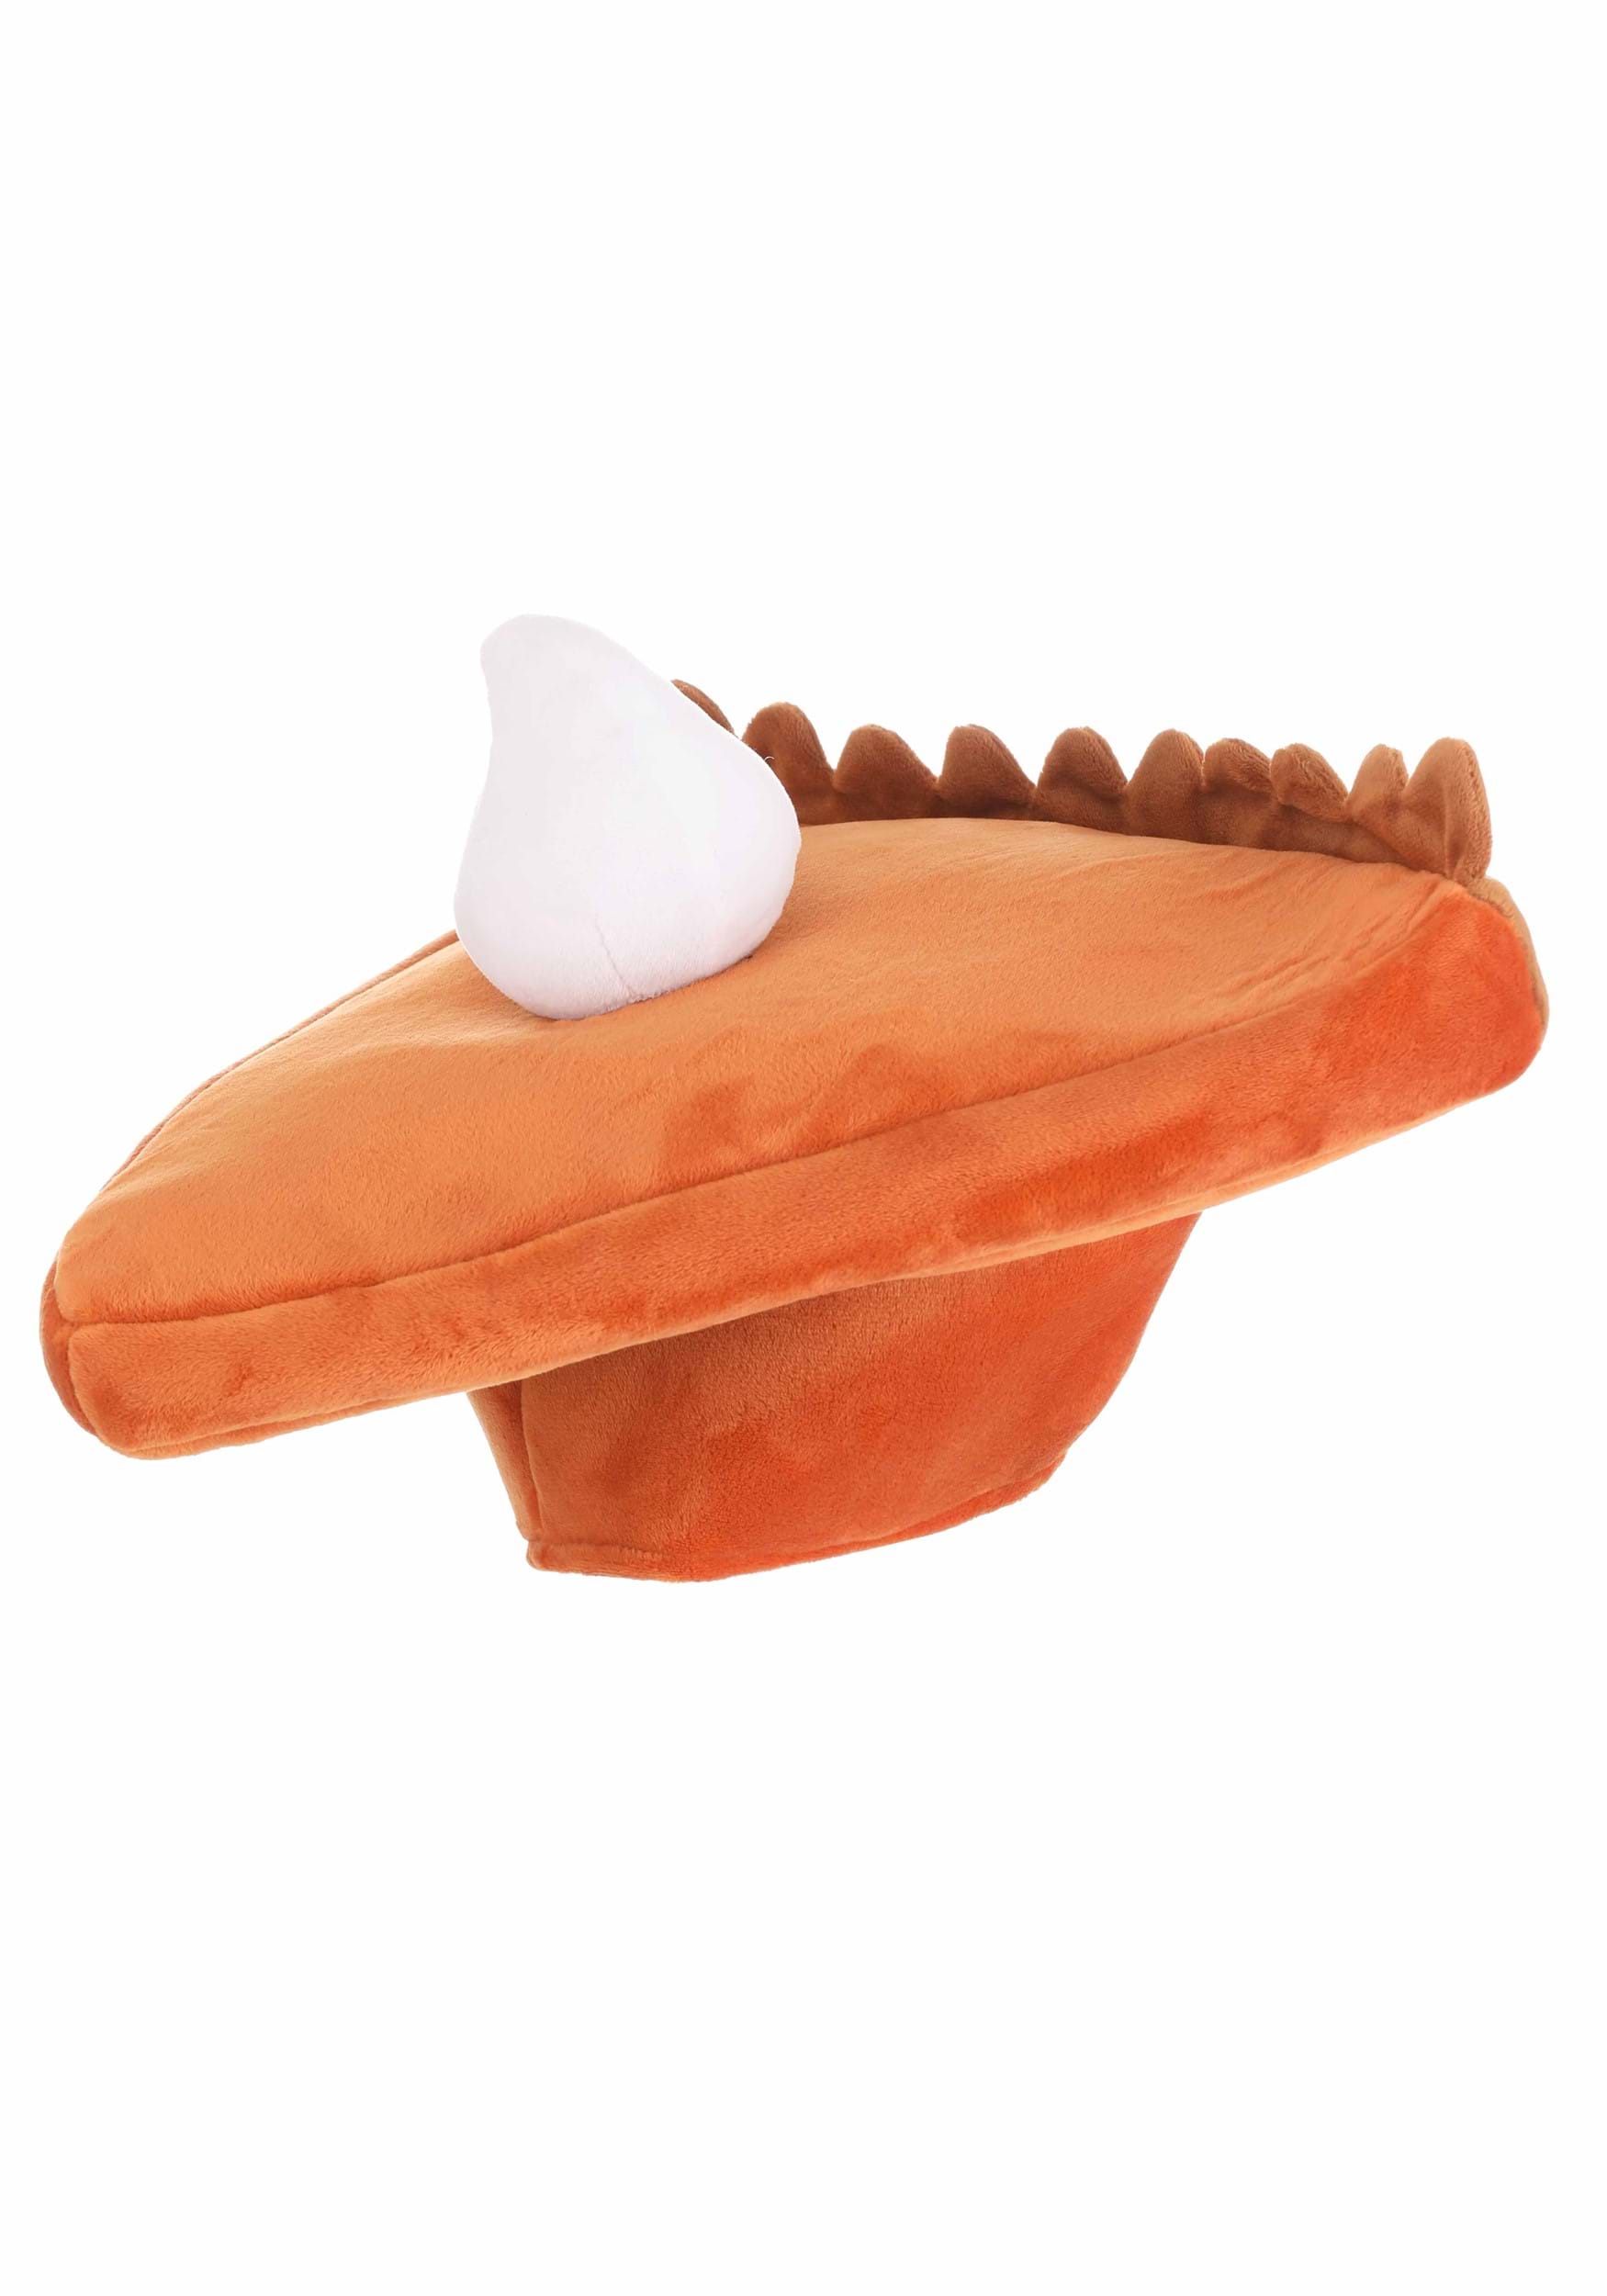 Pumpkin Pie Fancy Dress Costume Hat